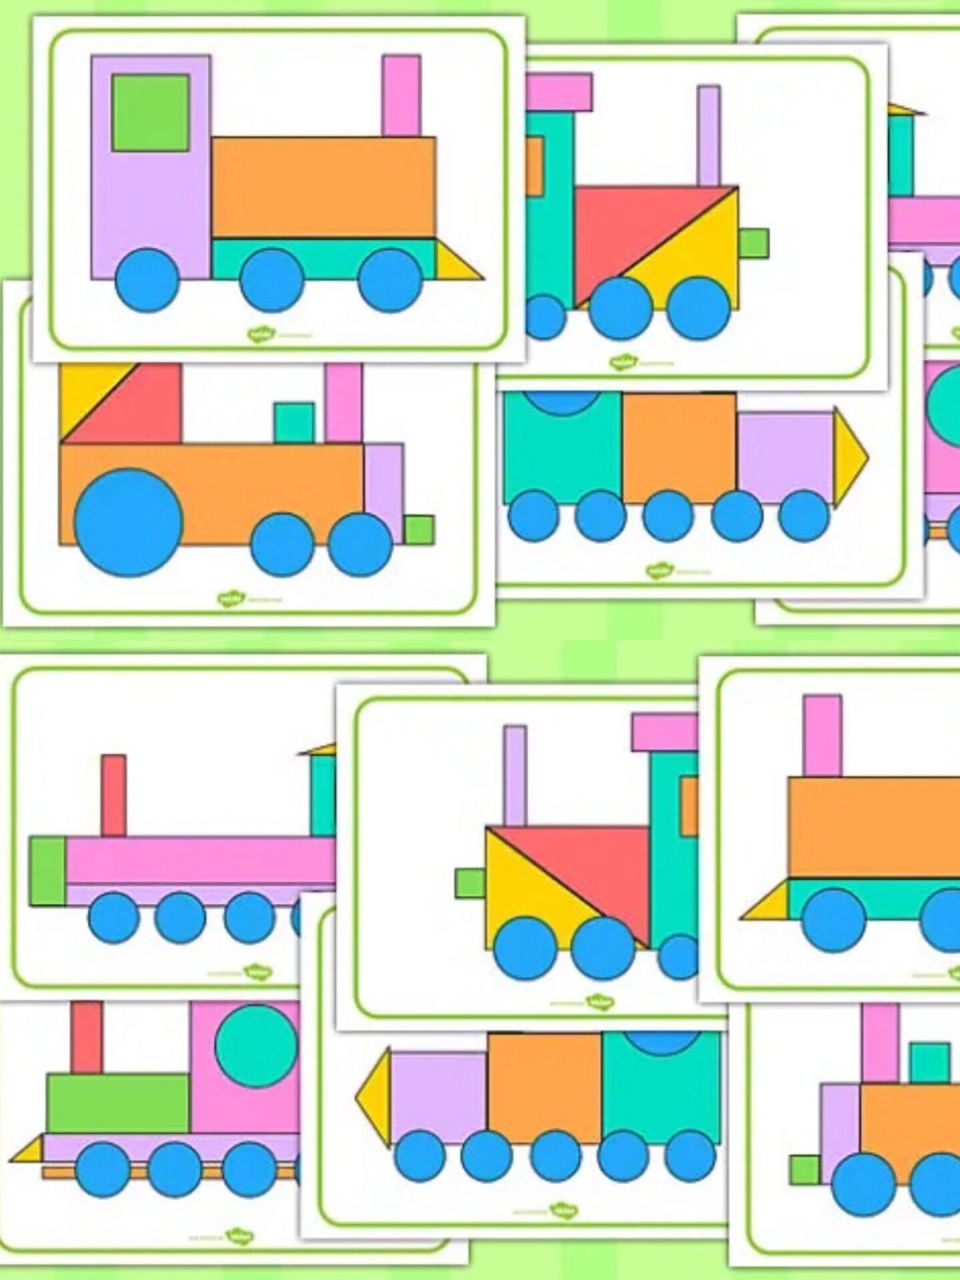 彩色卡车图形剪贴画 随意组合多种趣味 让我看看是哪个小朋友先拼出来